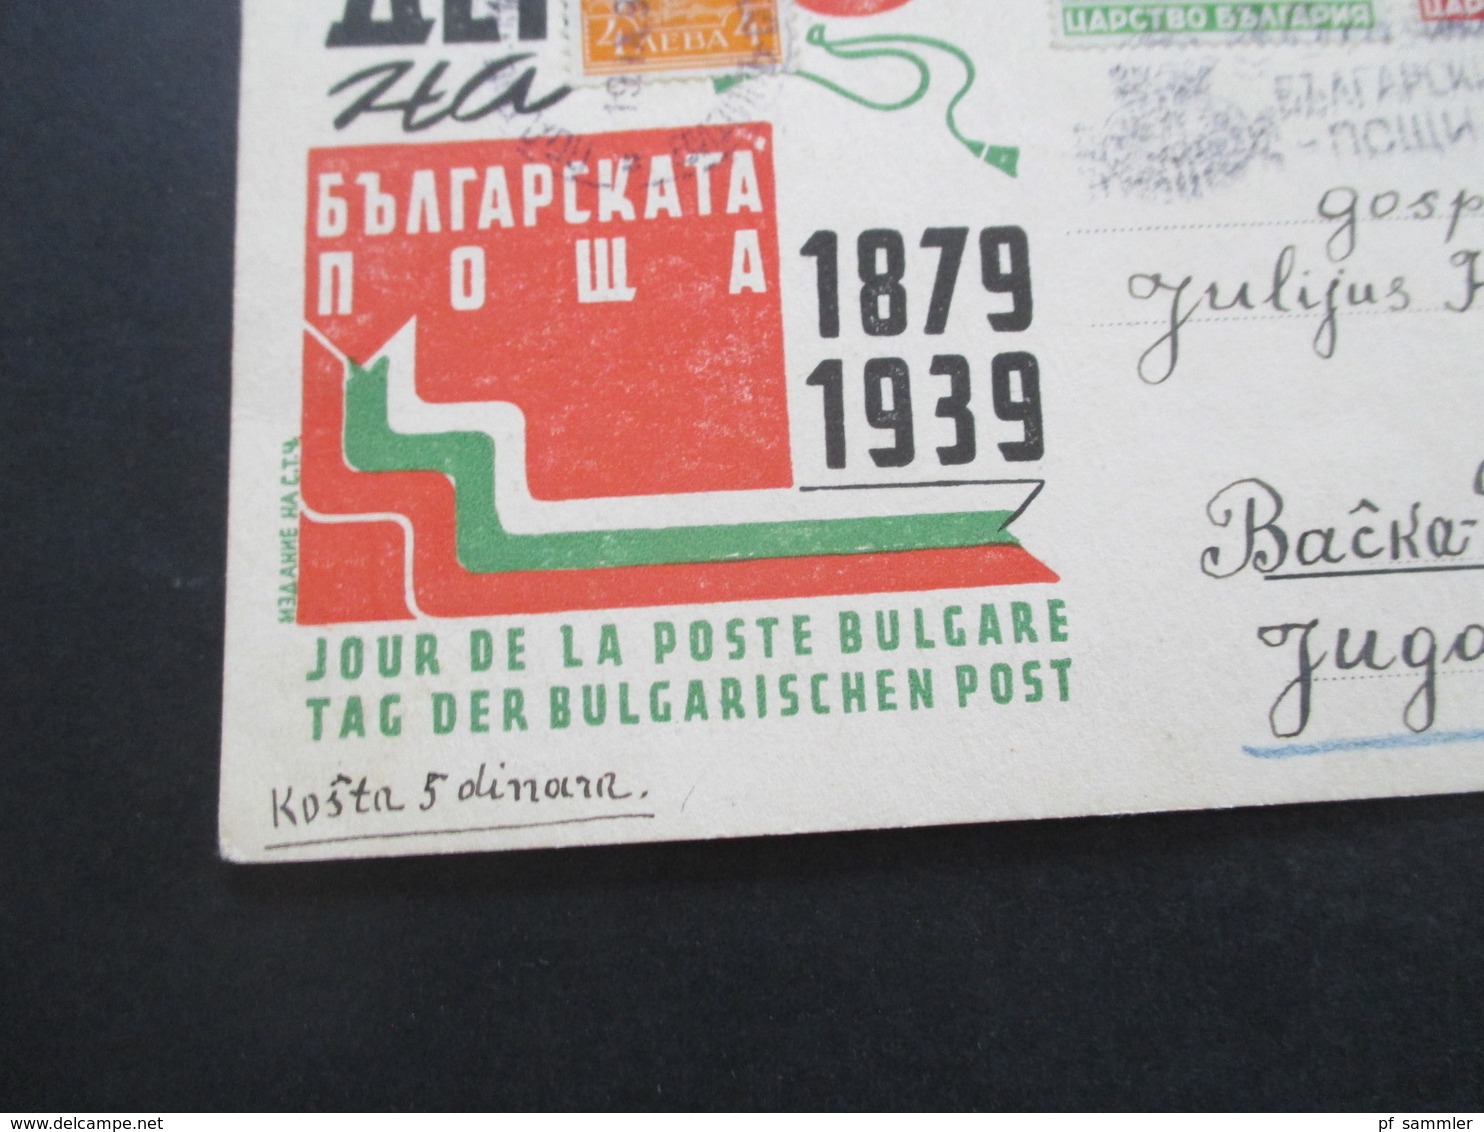 Bulgarien 1939 Sonderpsotkarte Tag Der Bulgarischen Post 1879 - 1939 Nach Backa Palanka Jugoslawien Gesendet - Briefe U. Dokumente